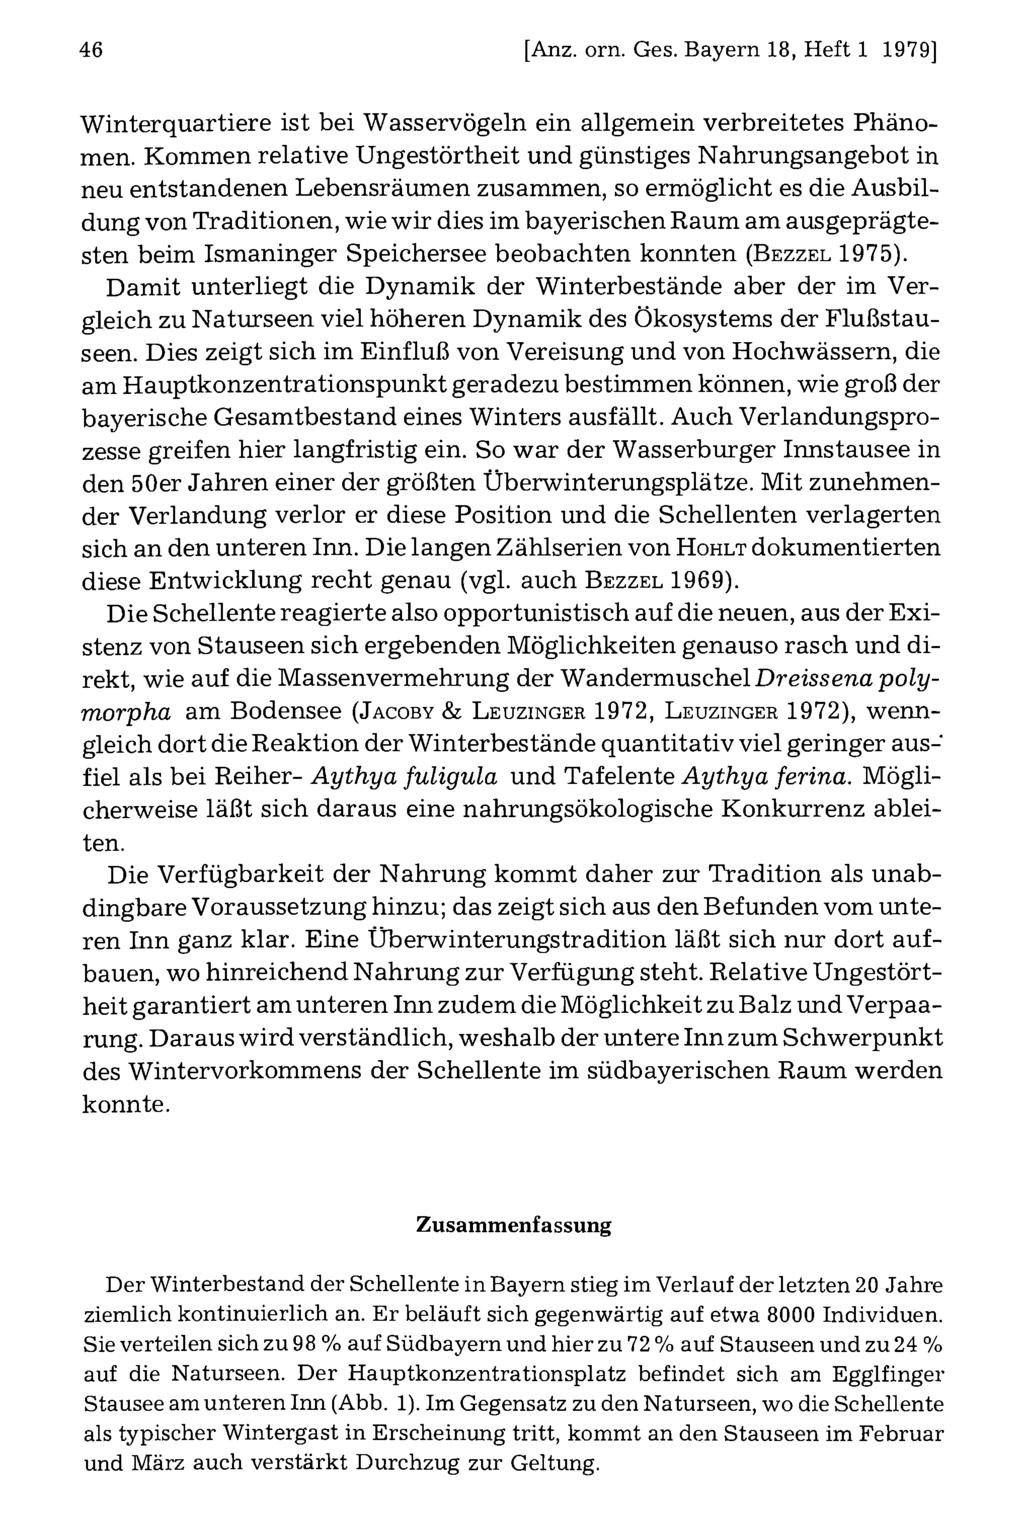 46 Ornithologische Gesellschaft Bayern, download [Anz. unter orn. www.biologiezentrum.at Ges. Bayern 18, Heft 1 1979] Winterquartiere ist bei Wasservögeln ein allgemein verbreitetes Phänomen.